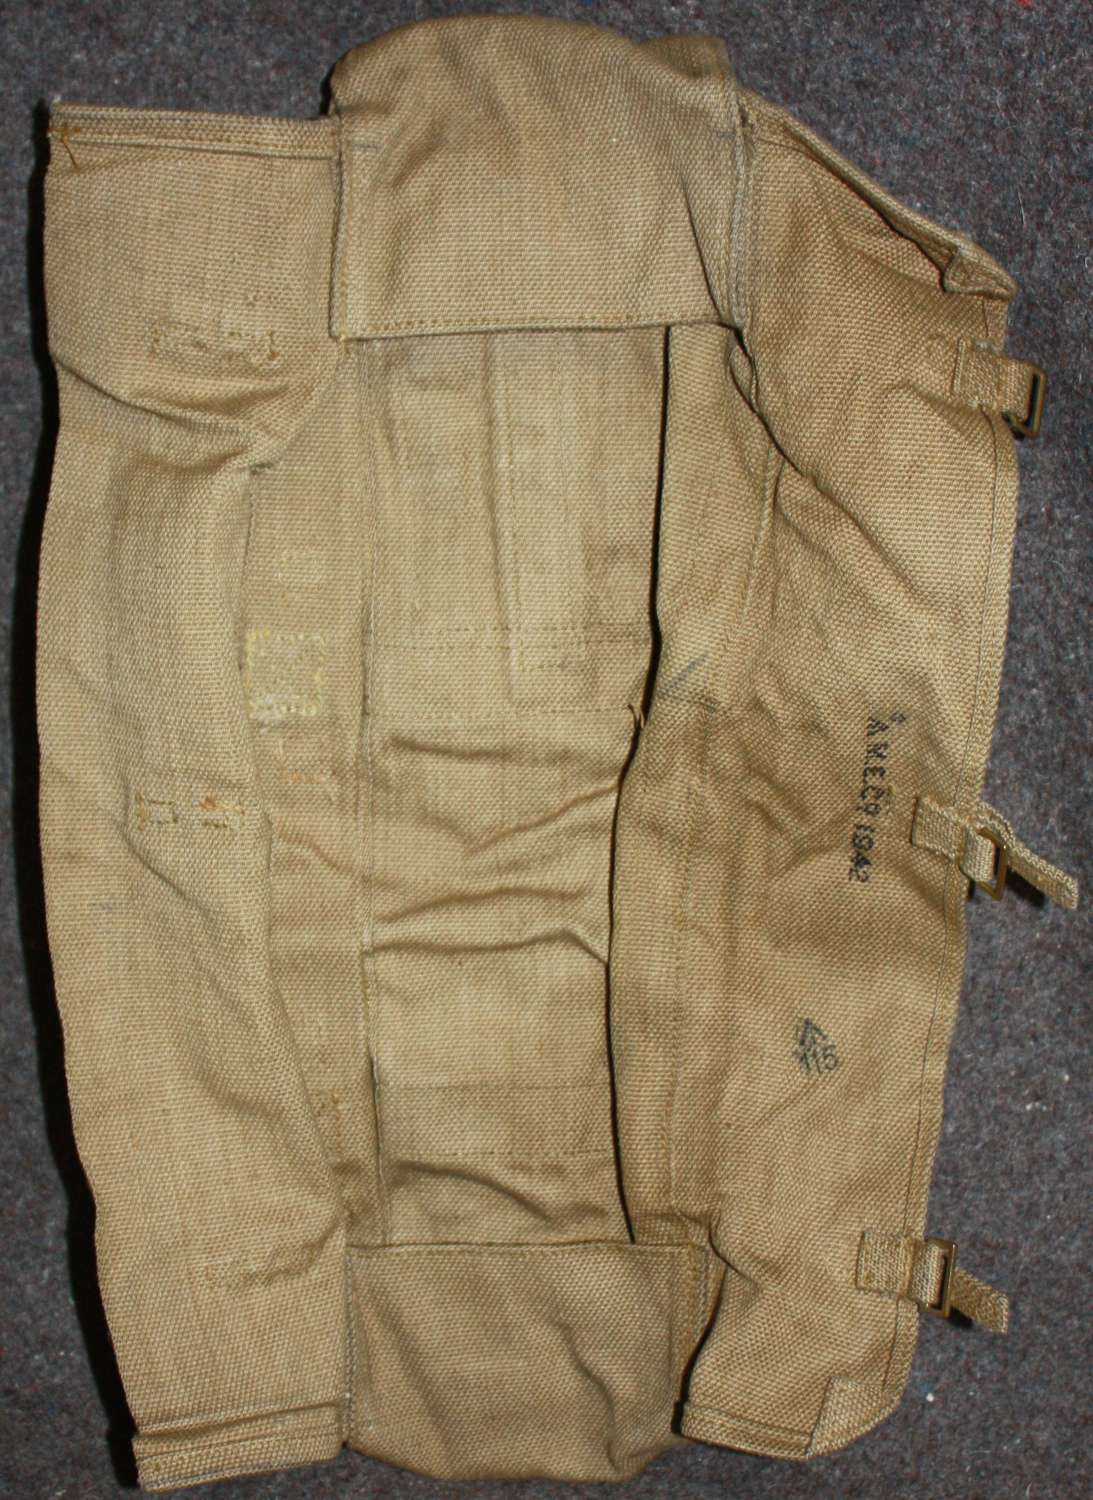 A 1942 DATED 2 INCH MORTAR LEG AMMO BAG